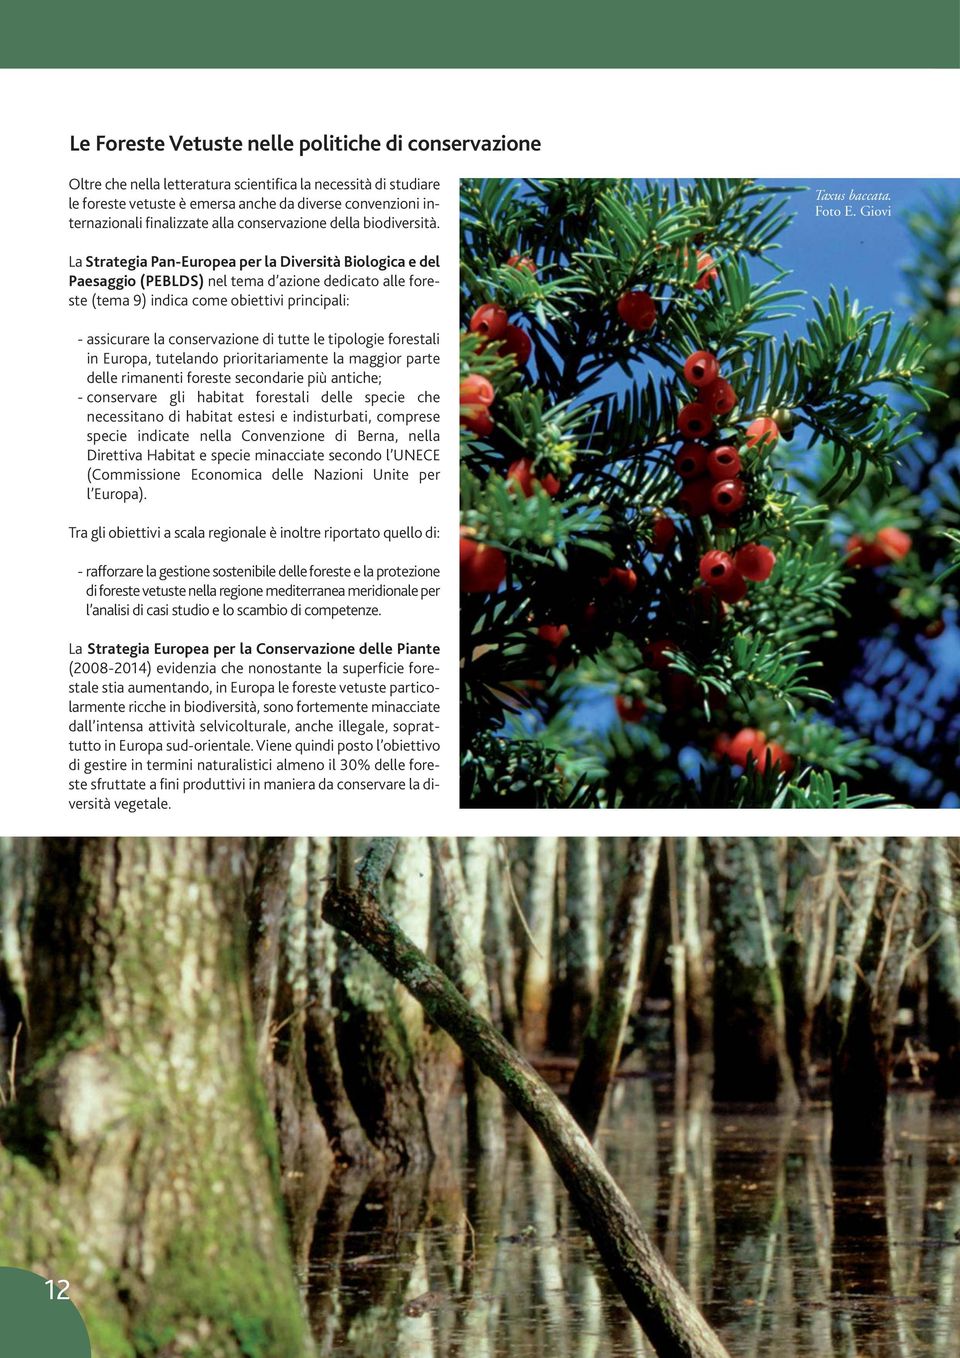 Giovi La Strategia Pan-Europea per la Diversità Biologica e del Paesaggio (PEBLDS) nel tema d azione dedicato alle foreste (tema 9) indica come obiettivi principali: - assicurare la conservazione di